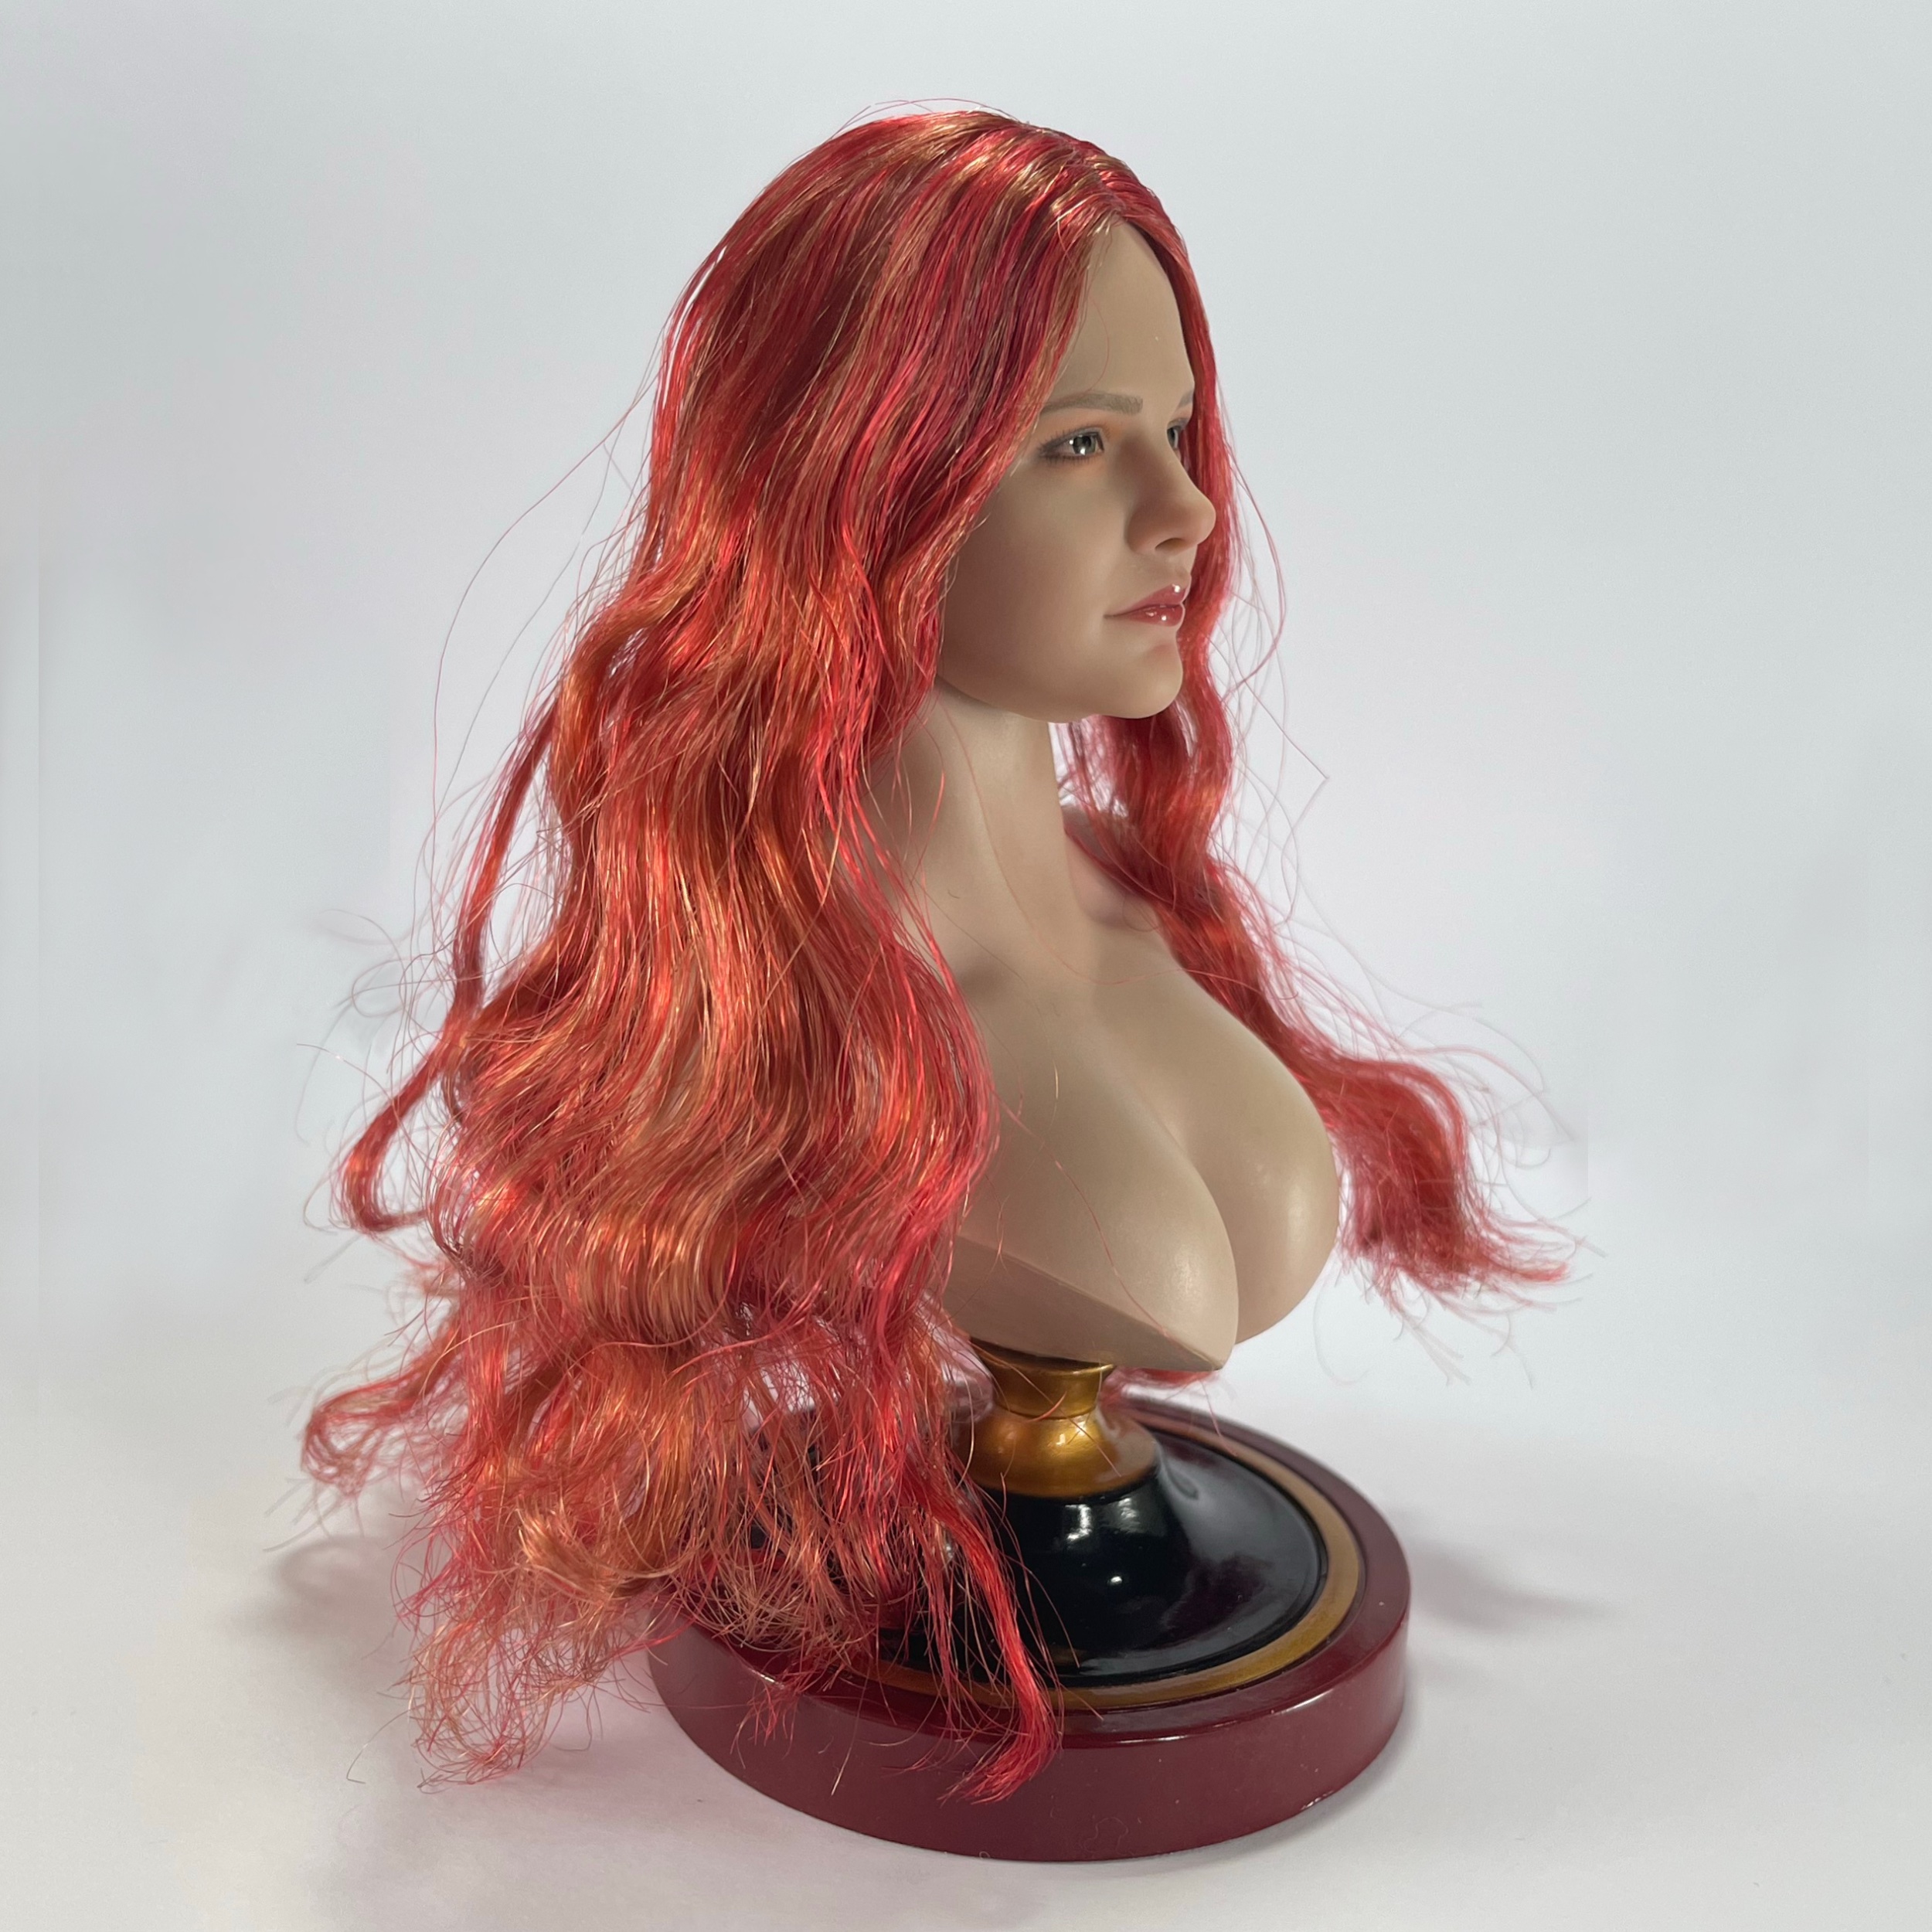 headsculpt - NEW PRODUCT: SUPER DUCK SDH036 1/6 Scale Female head sculpt in 4 styles 52860114403_56650c0e42_o